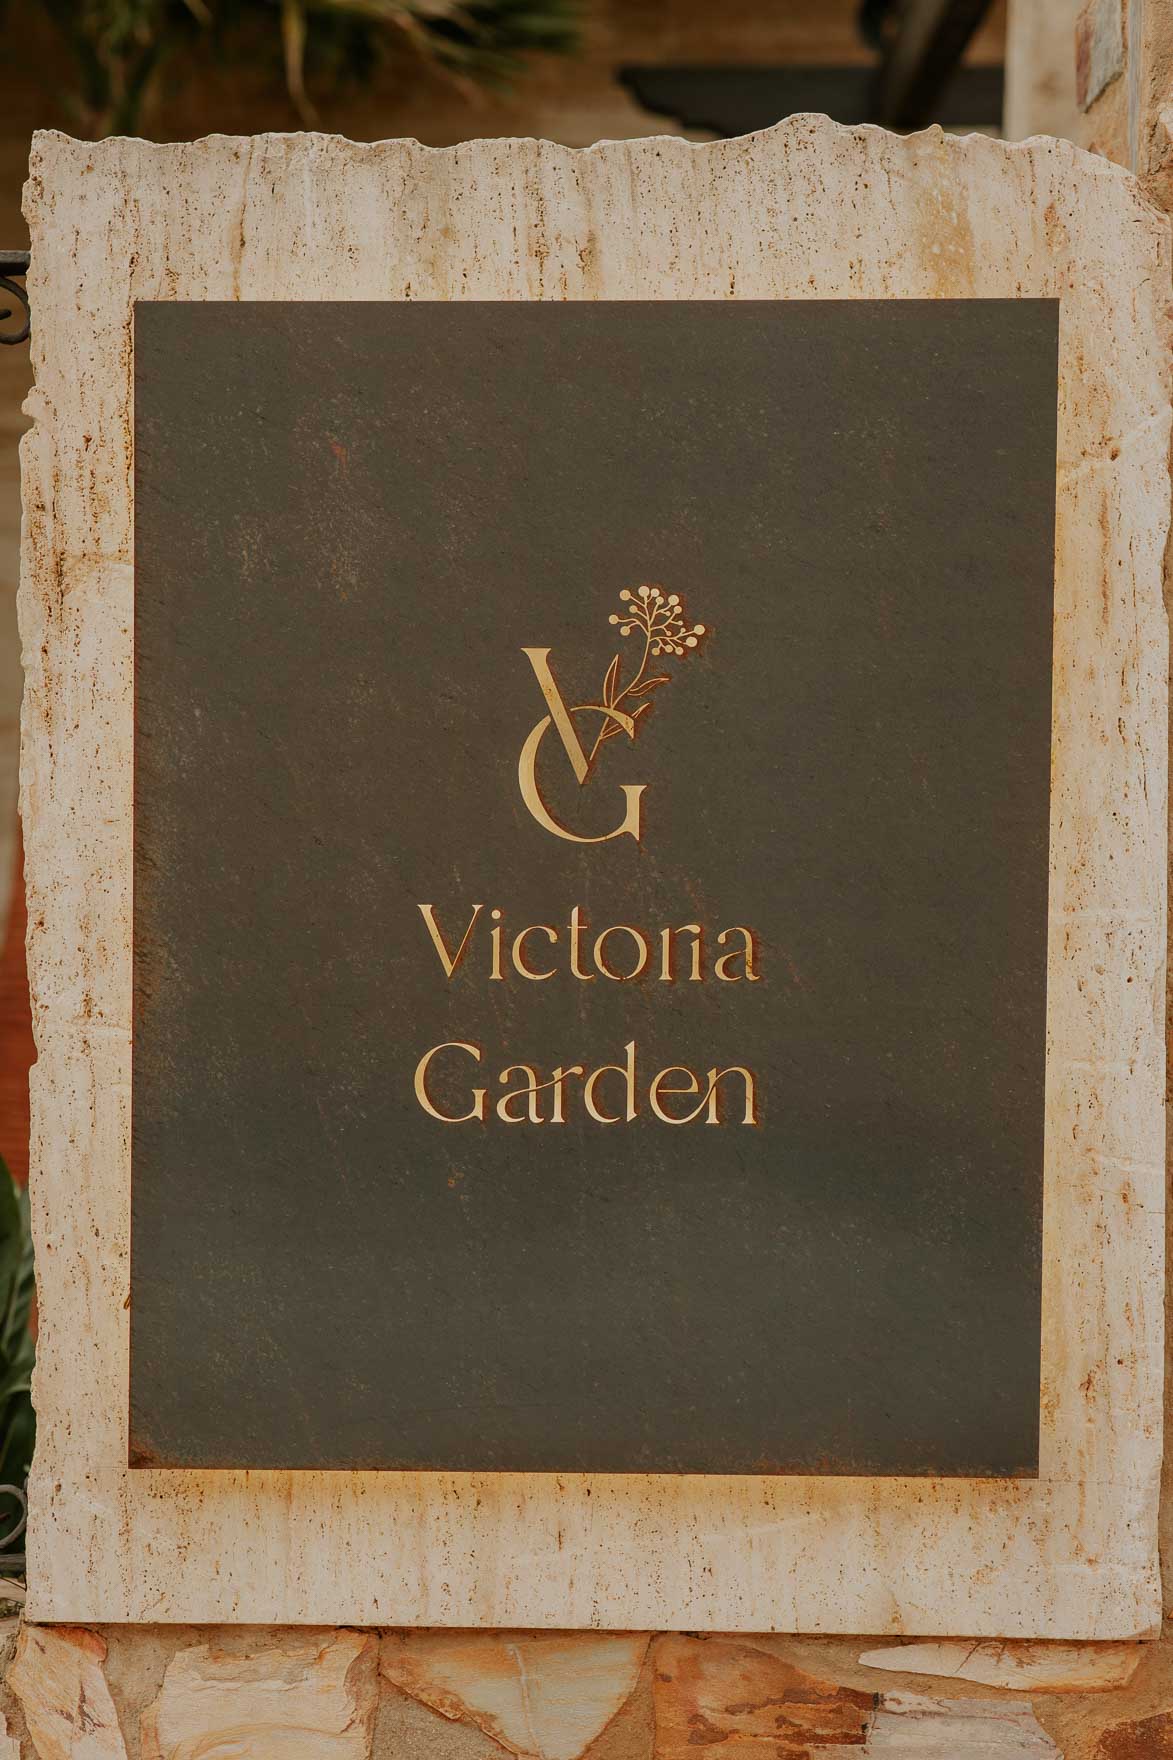 Finca Victoria Garden